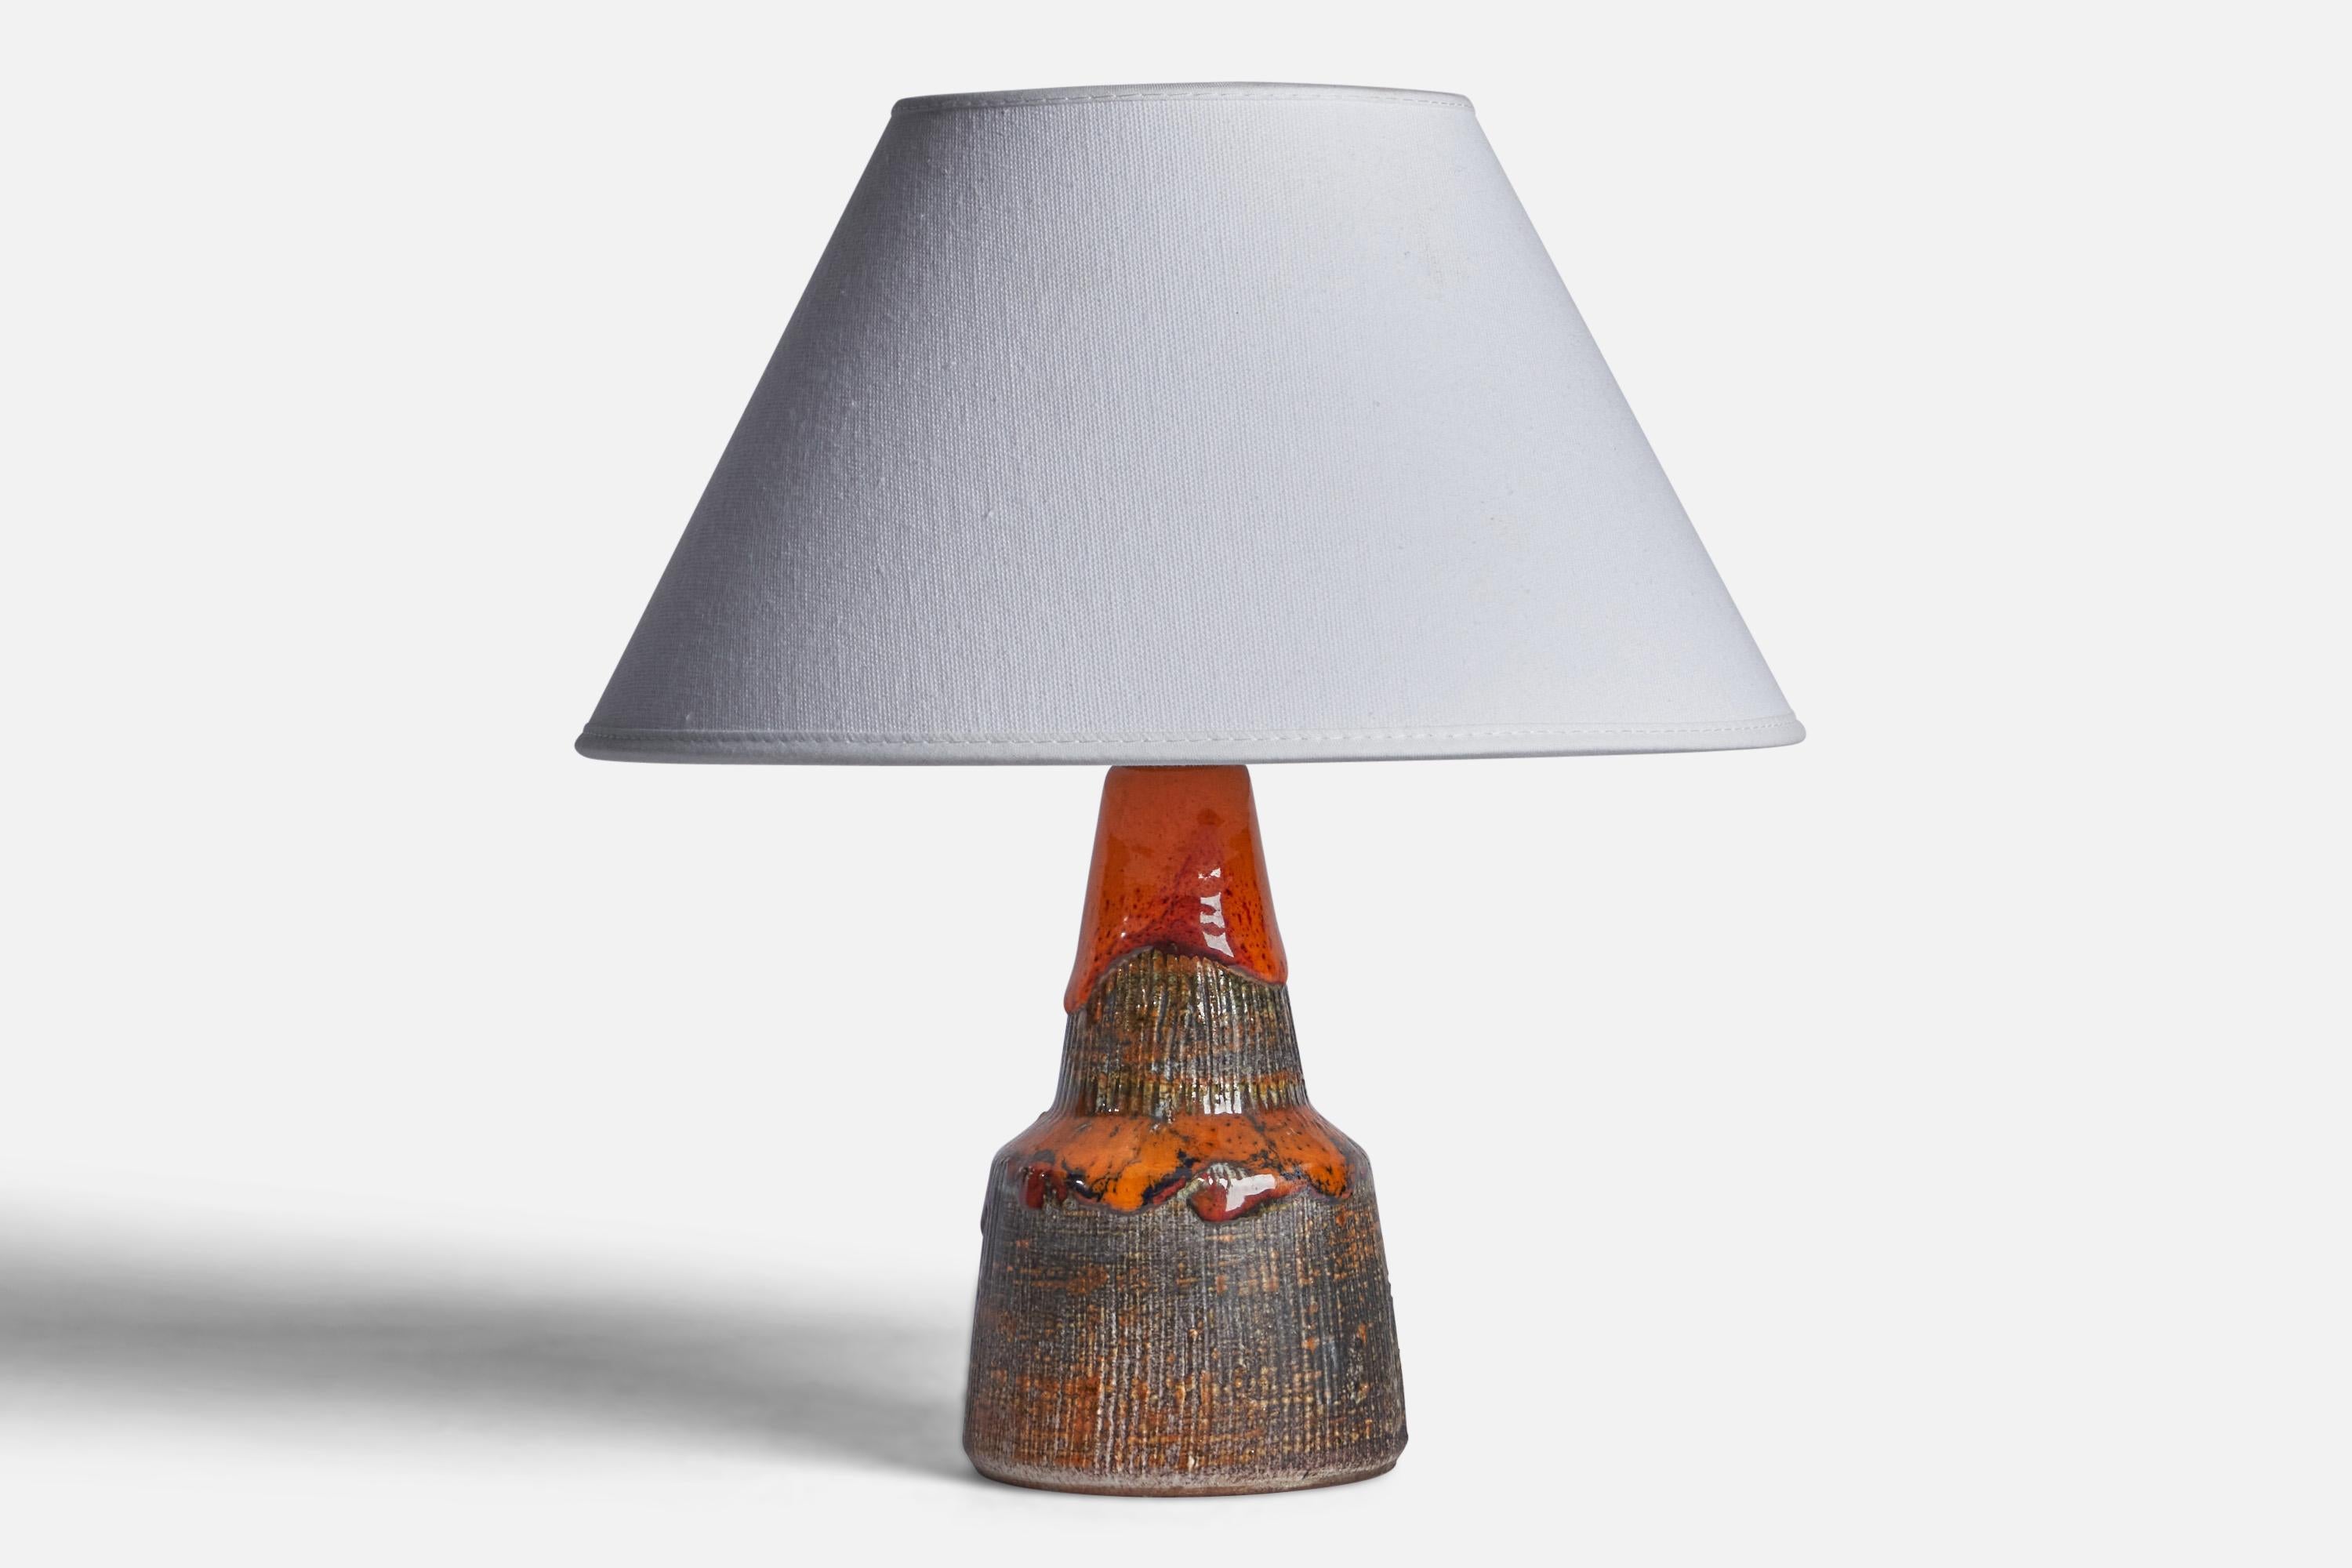 Tischlampe aus rotem, braunem und orangefarbenem Steingut, entworfen und hergestellt von Tilgmans Keramik, Schweden, 1960er Jahre.

Abmessungen der Lampe (Zoll): 8